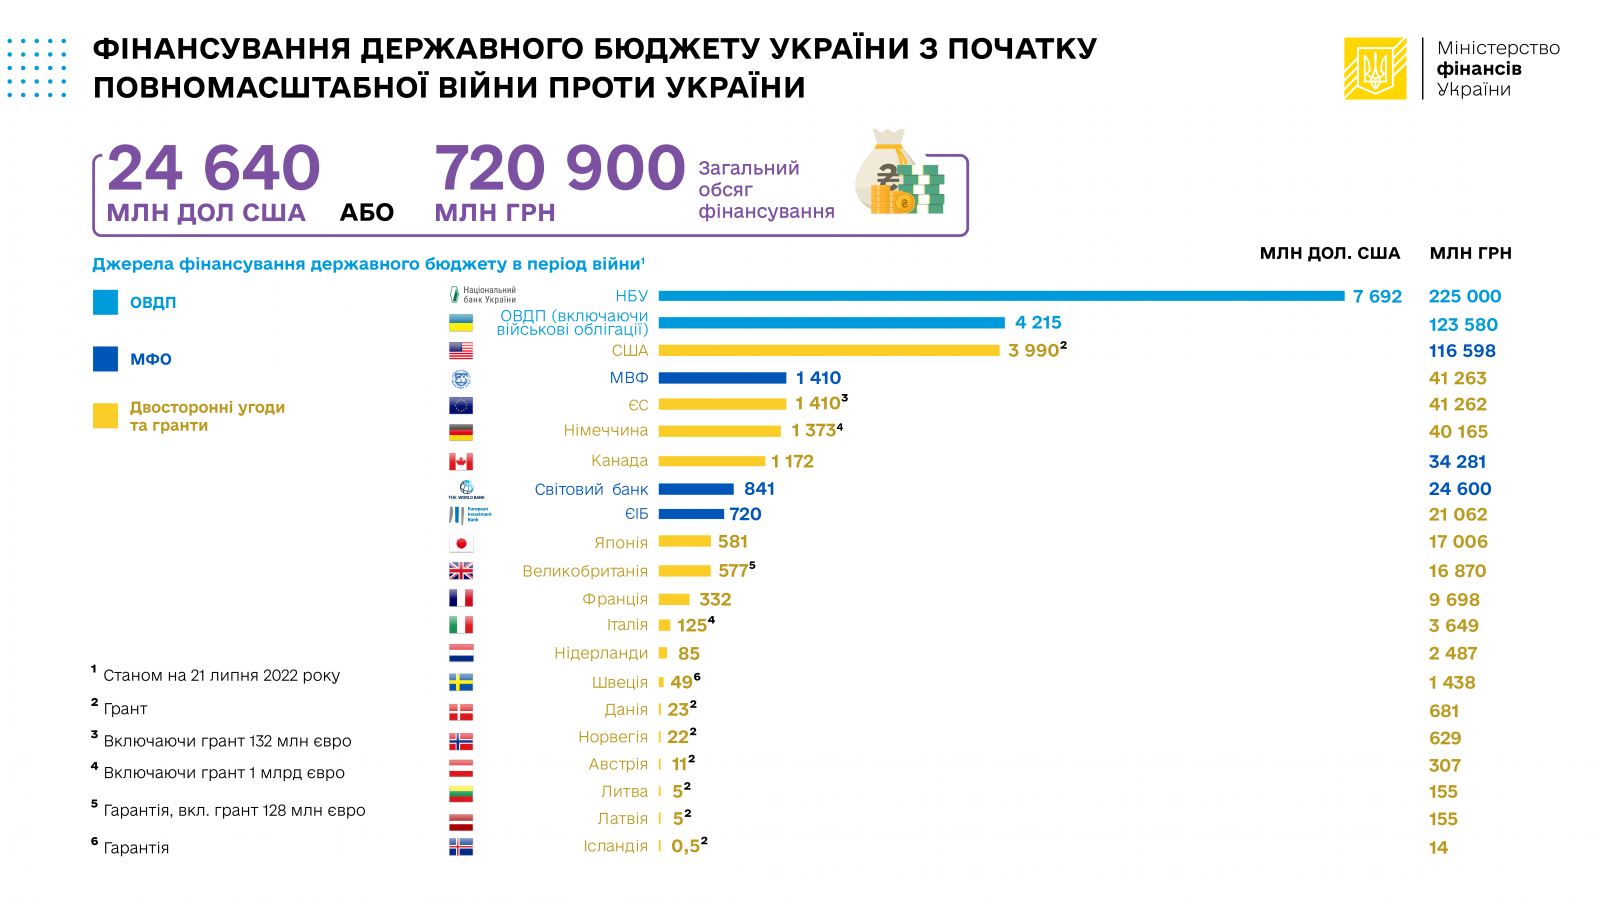 Откуда деньги: в Минфине назвали источники финансирования государственного бюджета Украины - фото 2